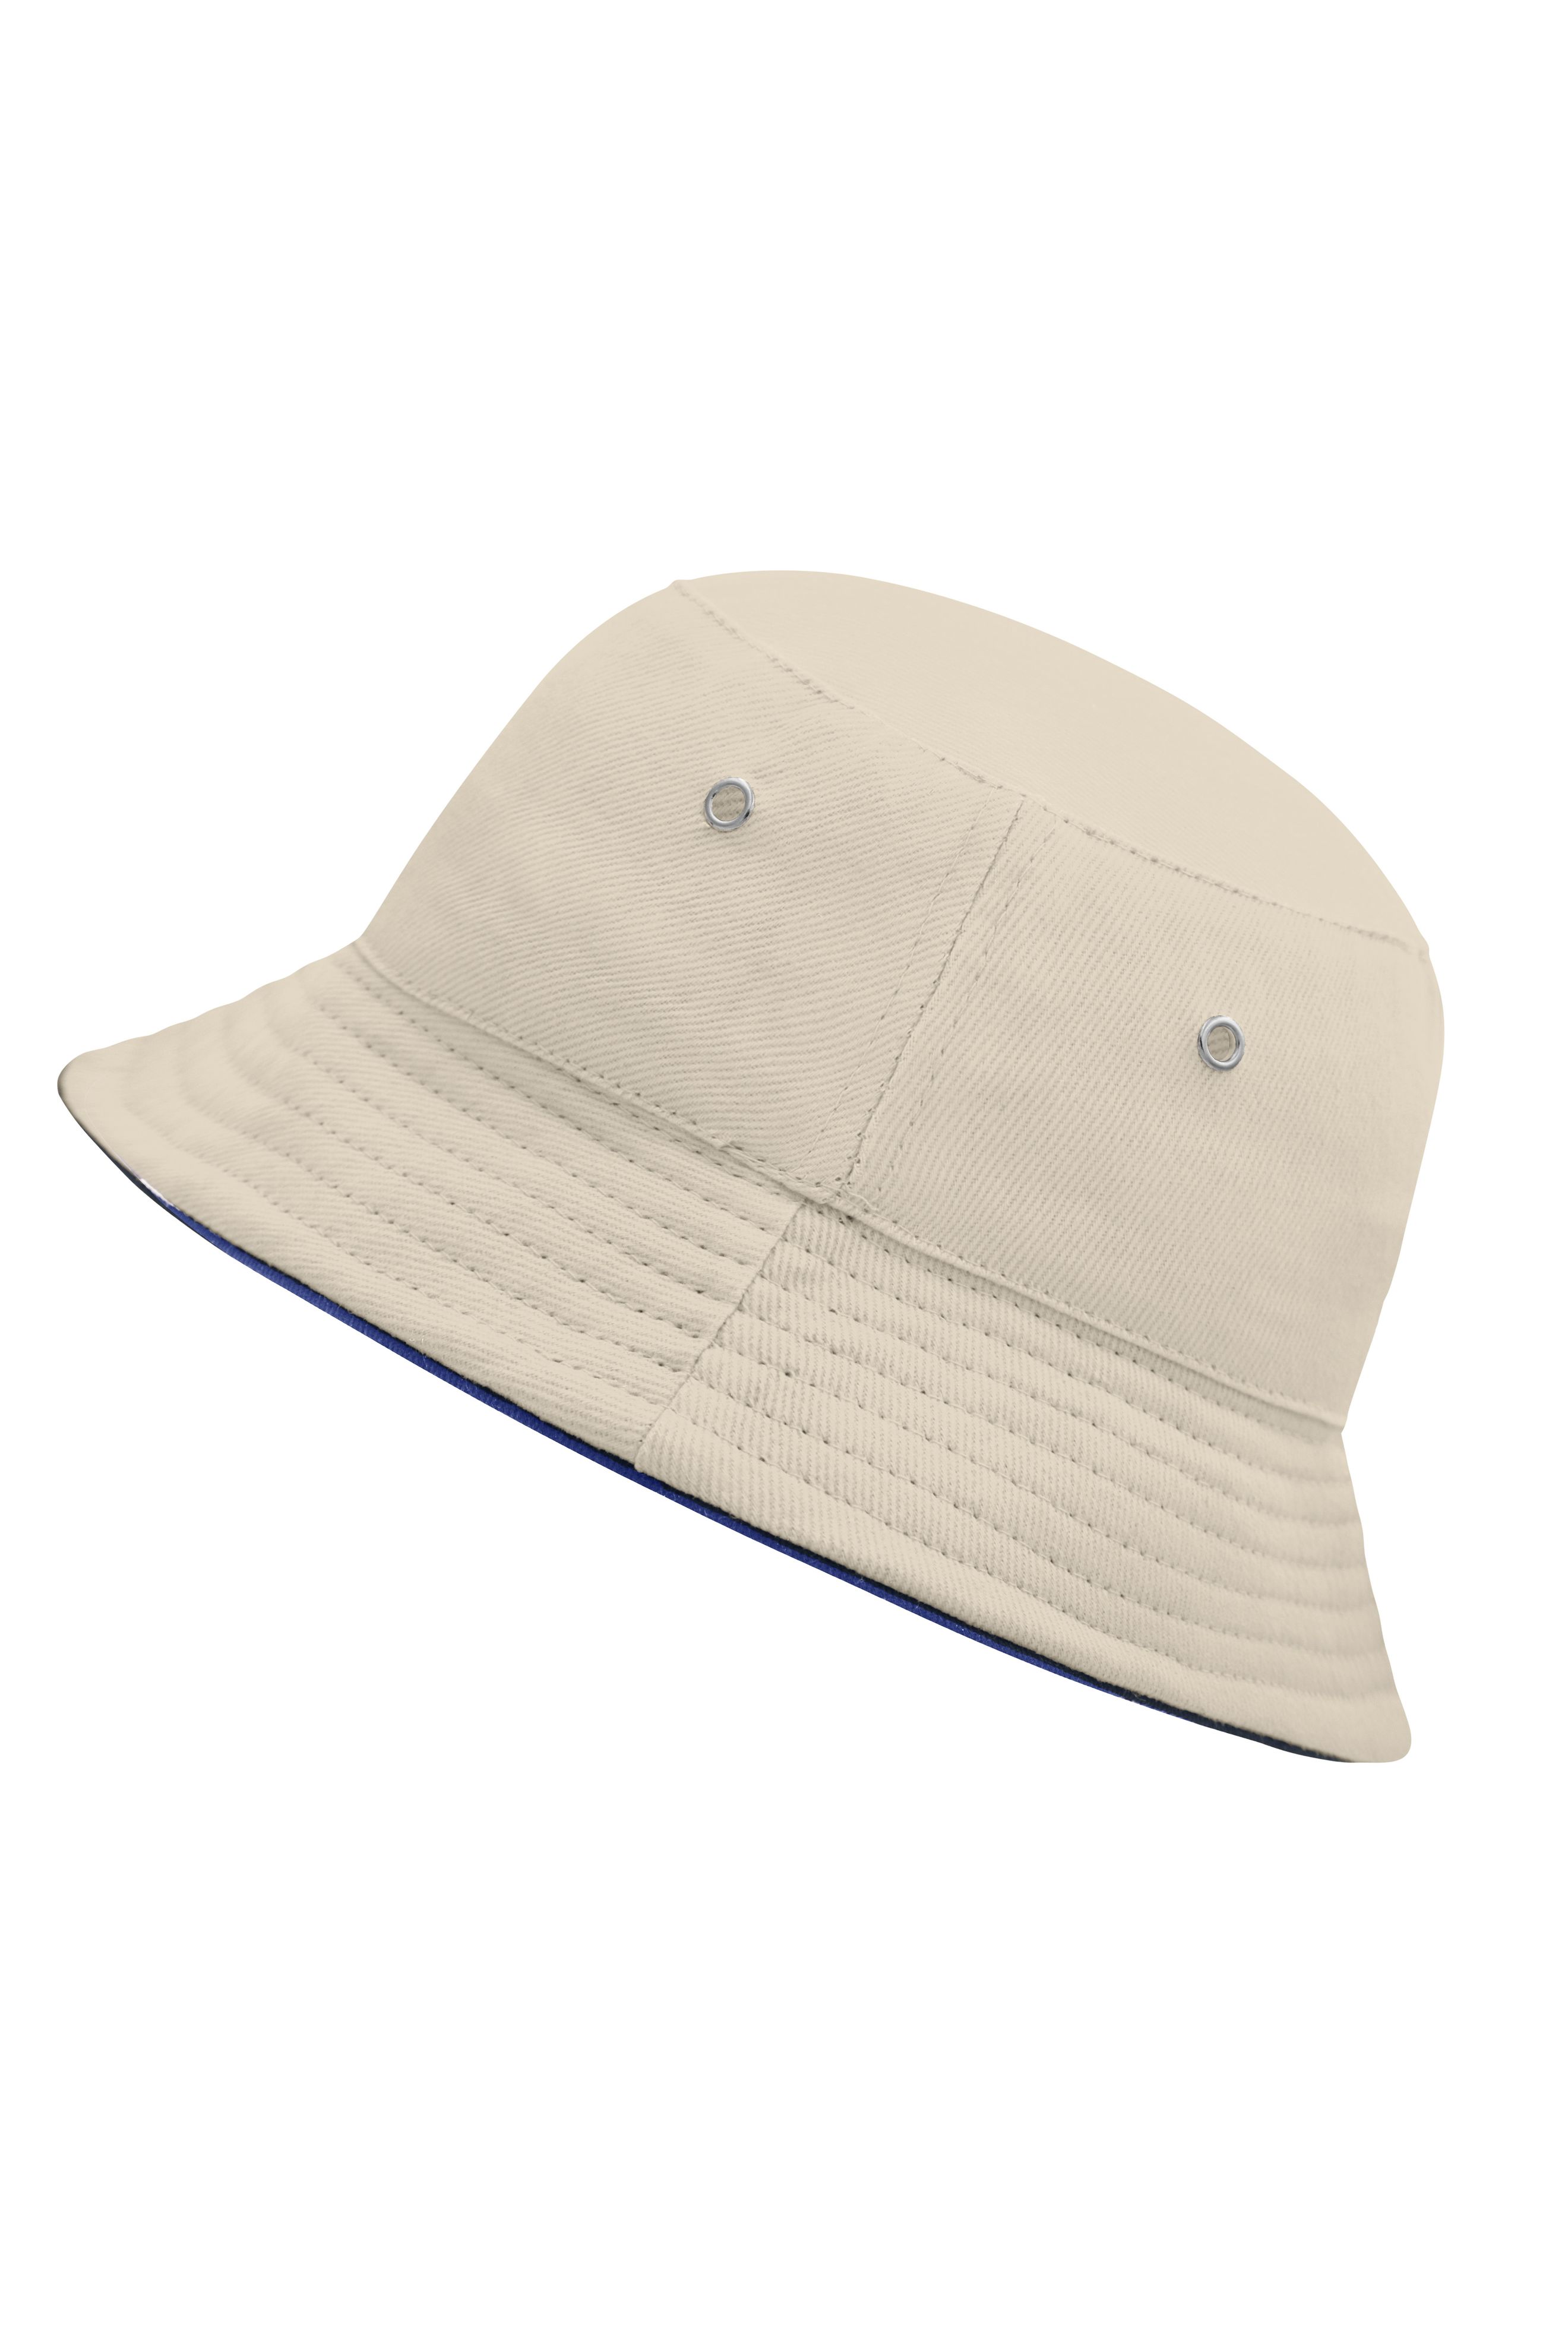 Fisherman Piping Hat for Kids MB013 Trendiger Kinderhut aus weicher Baumwolle